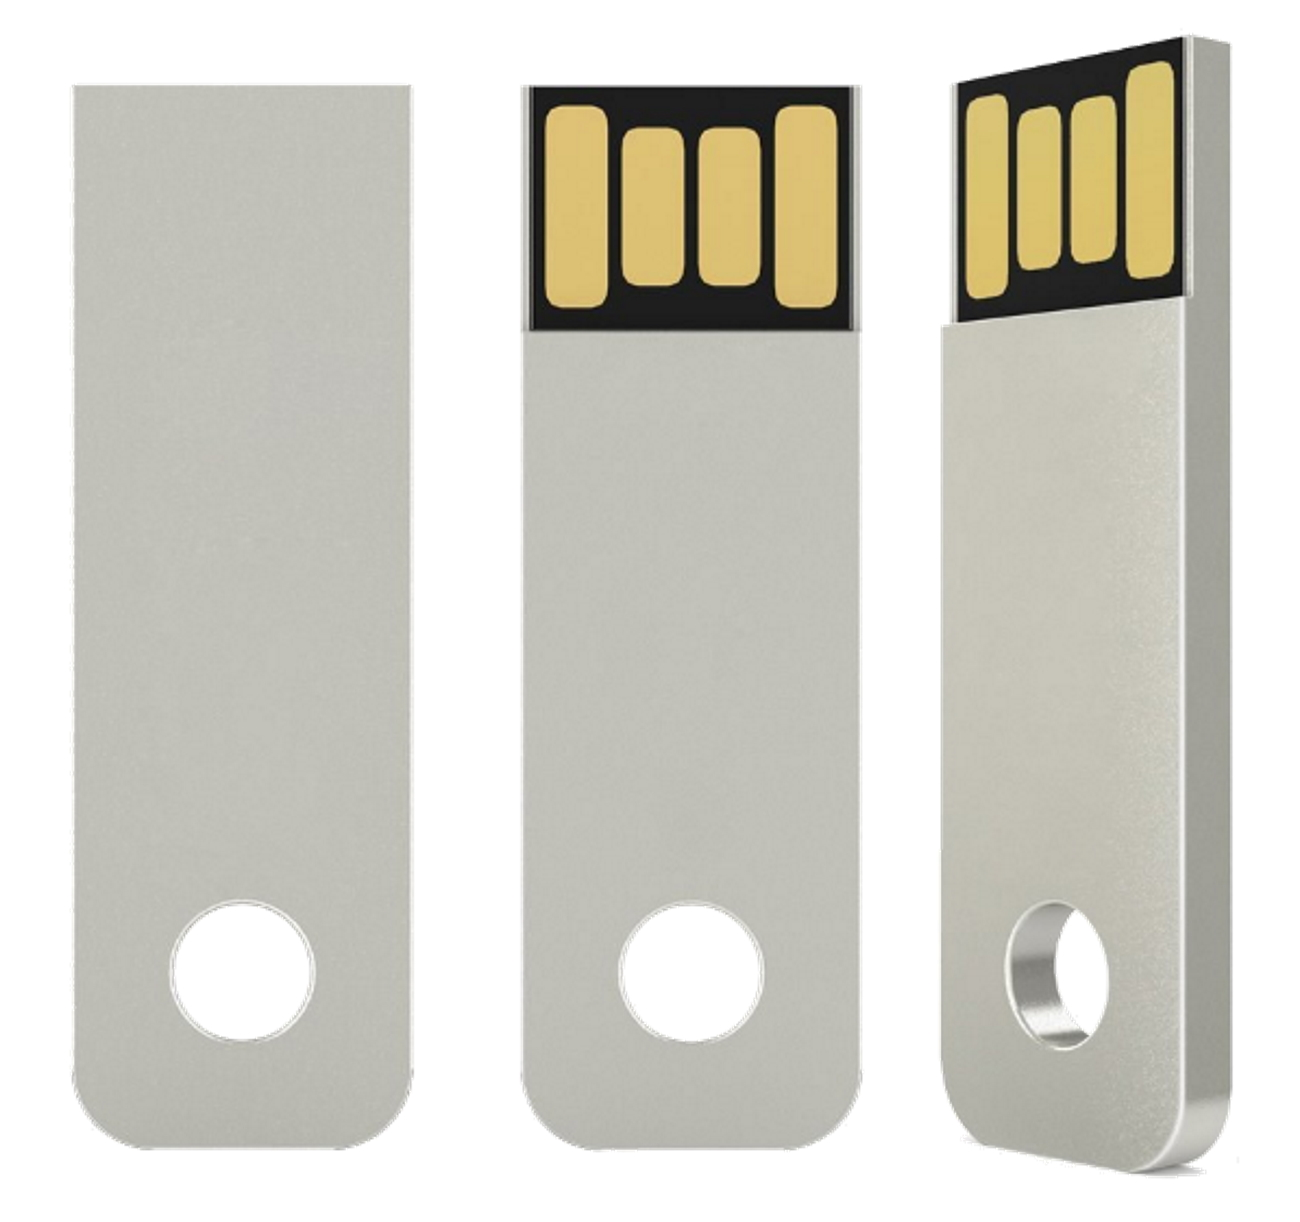 USB GERMANY ®Mini Key GB) 8 USB-Stick (Silber